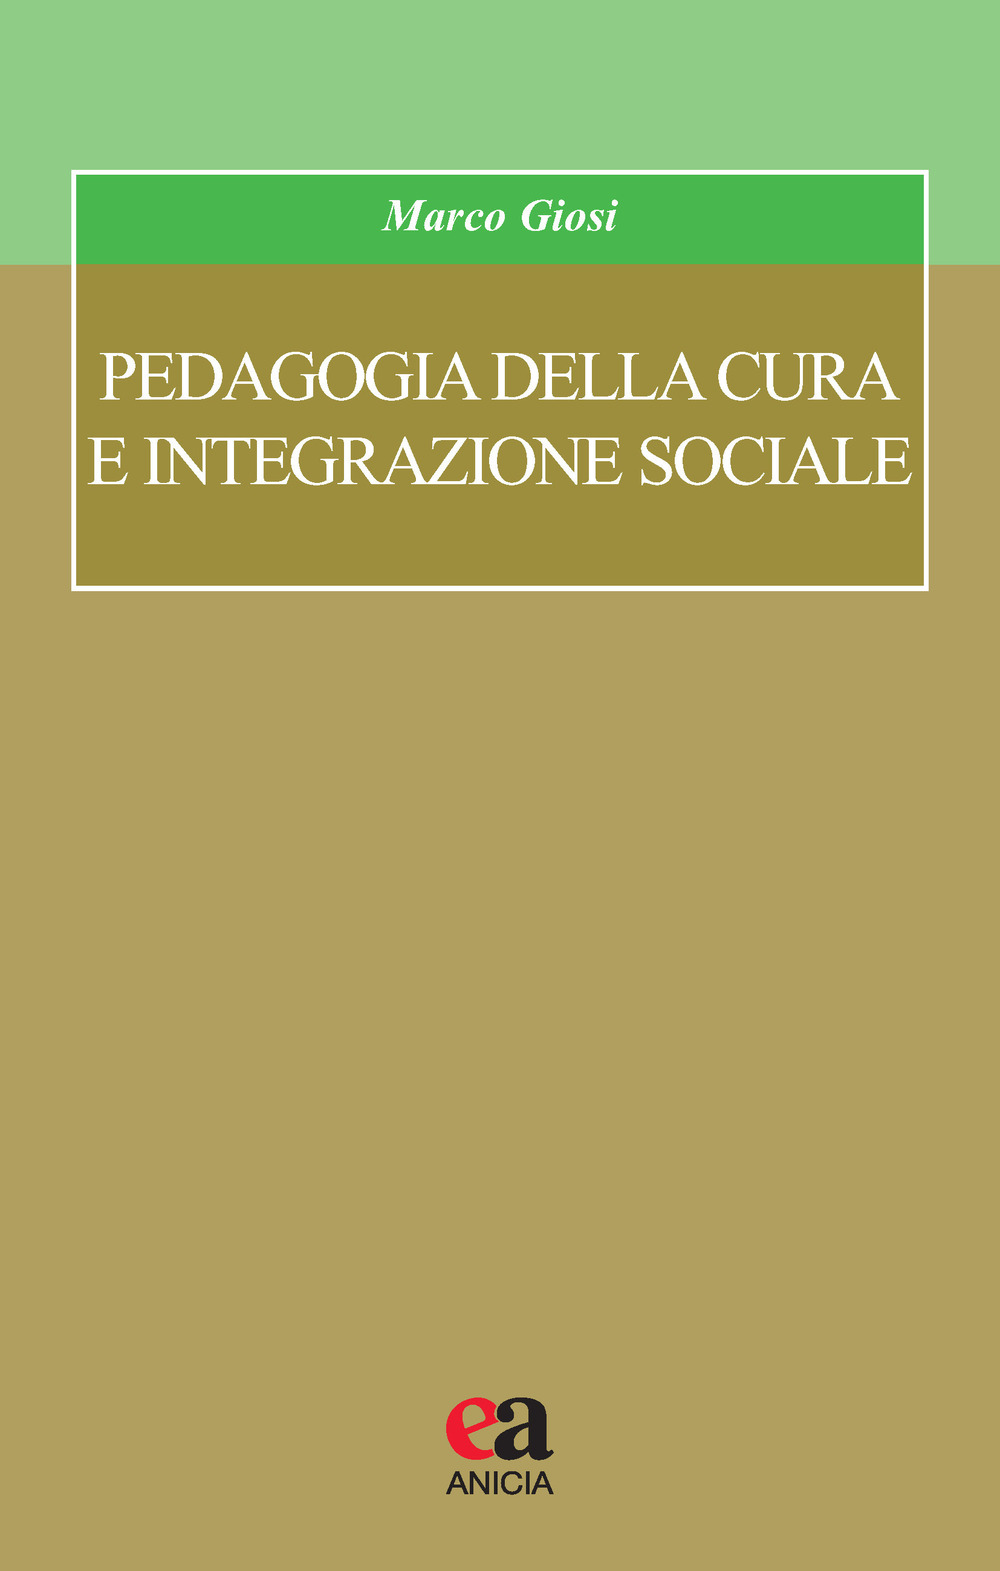 Image of Pedagogia della cura e integrazione sociale